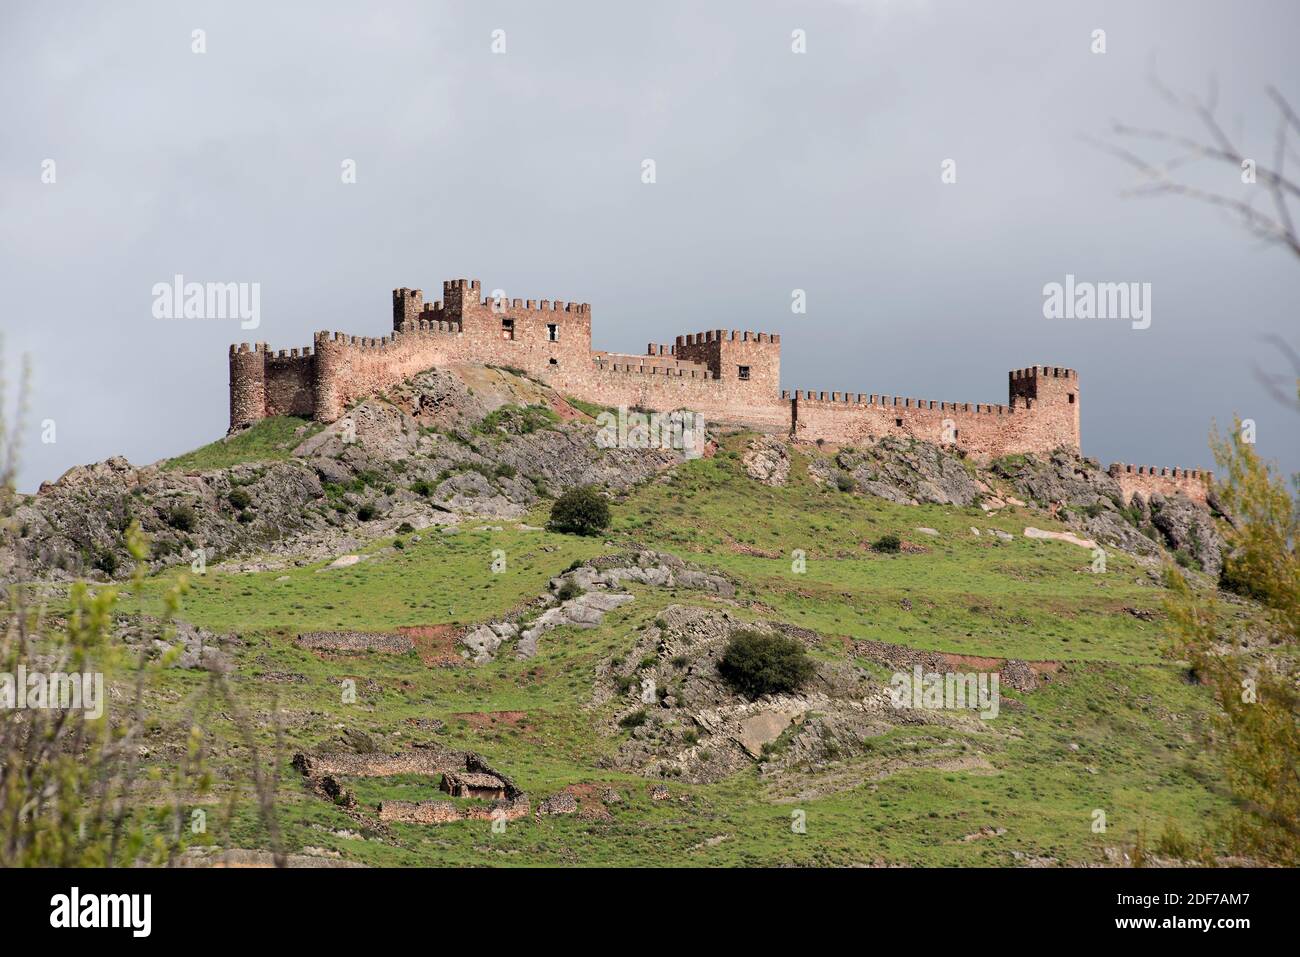 Riba de Santiuste castle. Sigüenza municipality, Guadalajara province, Castilla-La Mancha, Spain. Stock Photo